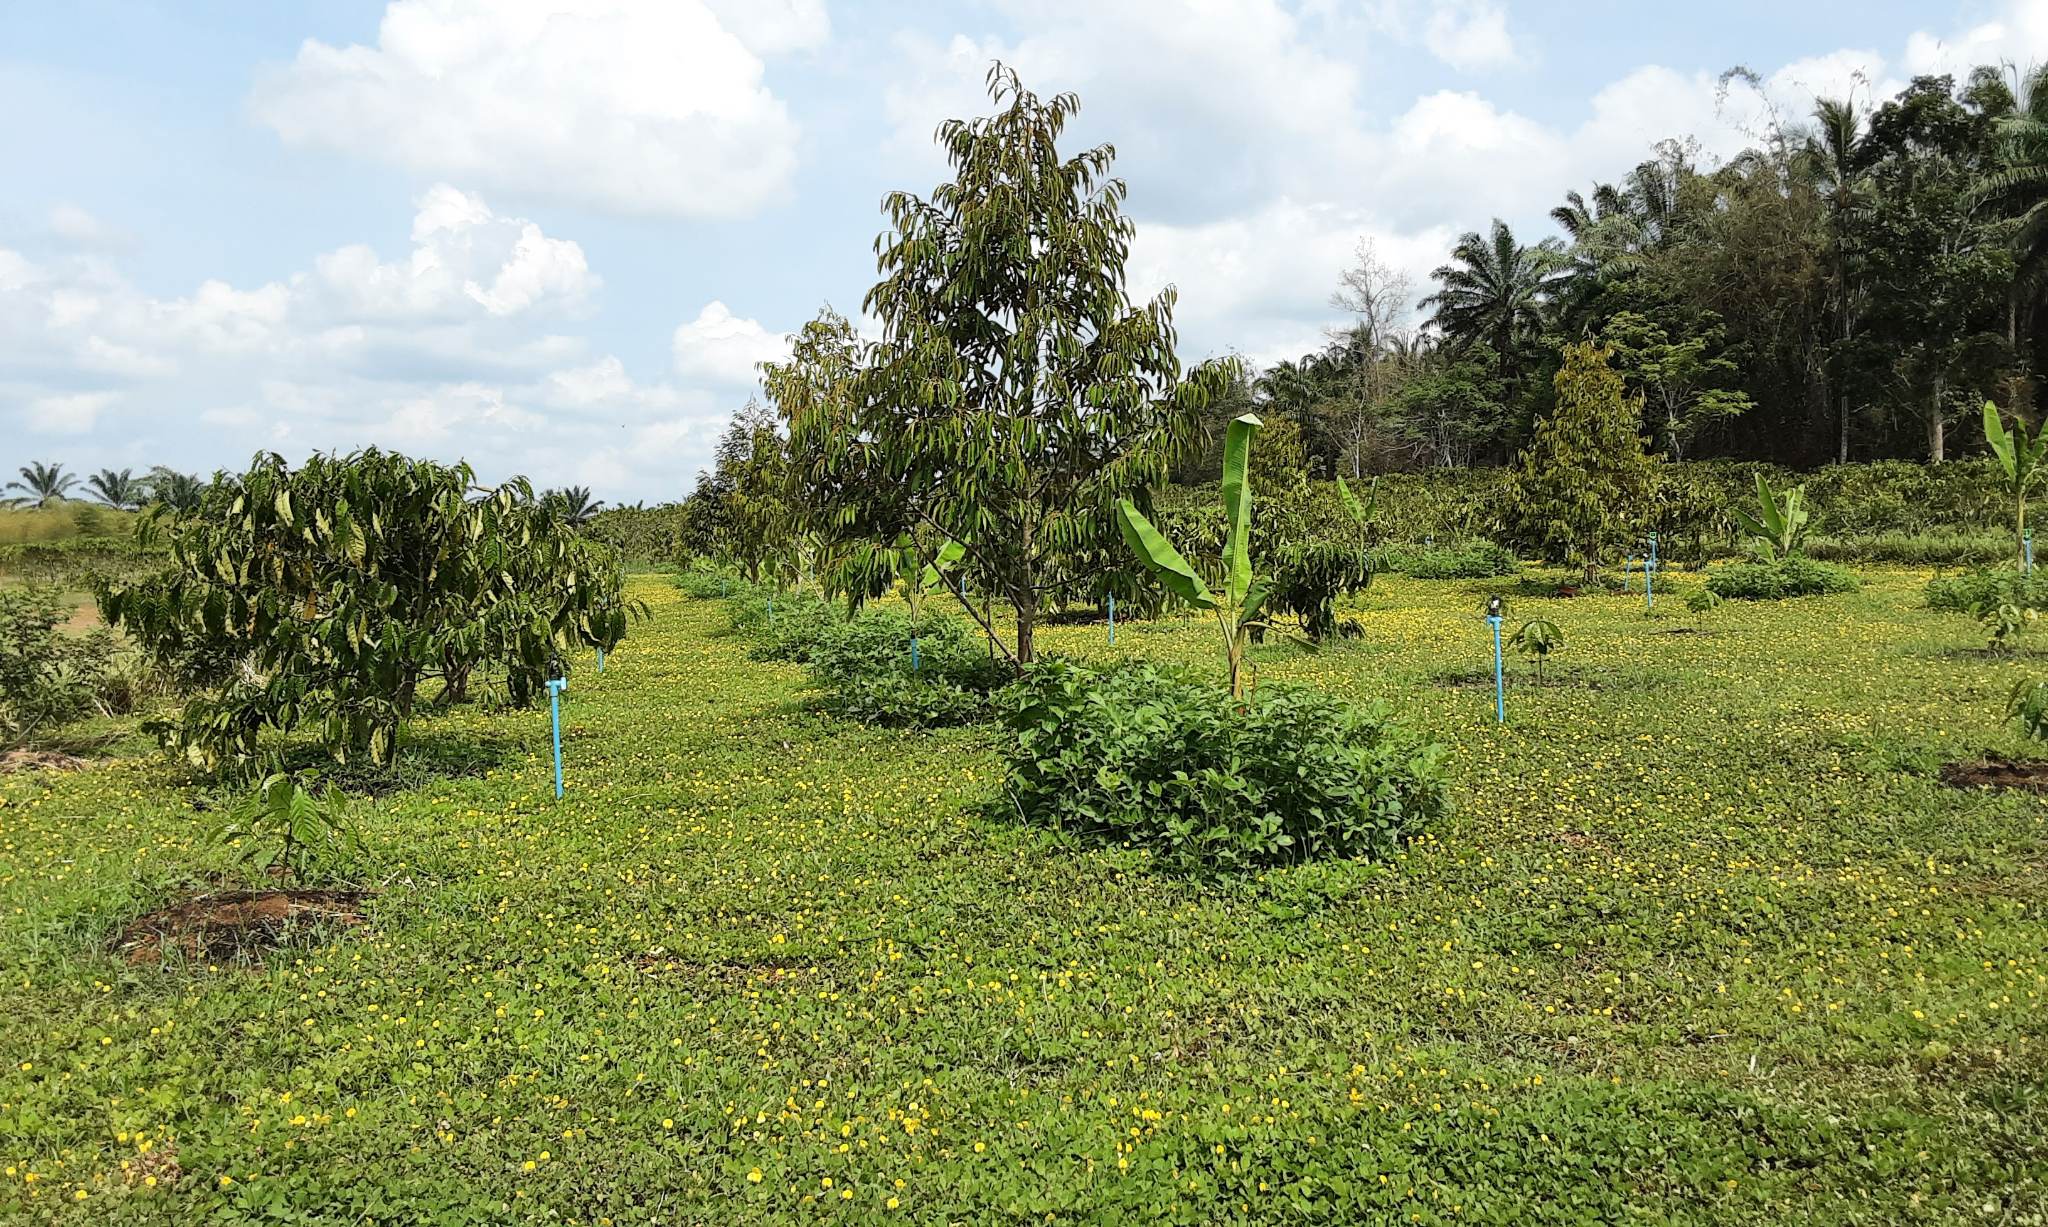 ระบบการปลูกพืชร่วมกับกาแฟ โดยปลูกกาแฟ ร่วมกับกล้วย ทุเรียน และพืชคลุมดิน เช่น ถั่วบราซิลและถั่วลิสง